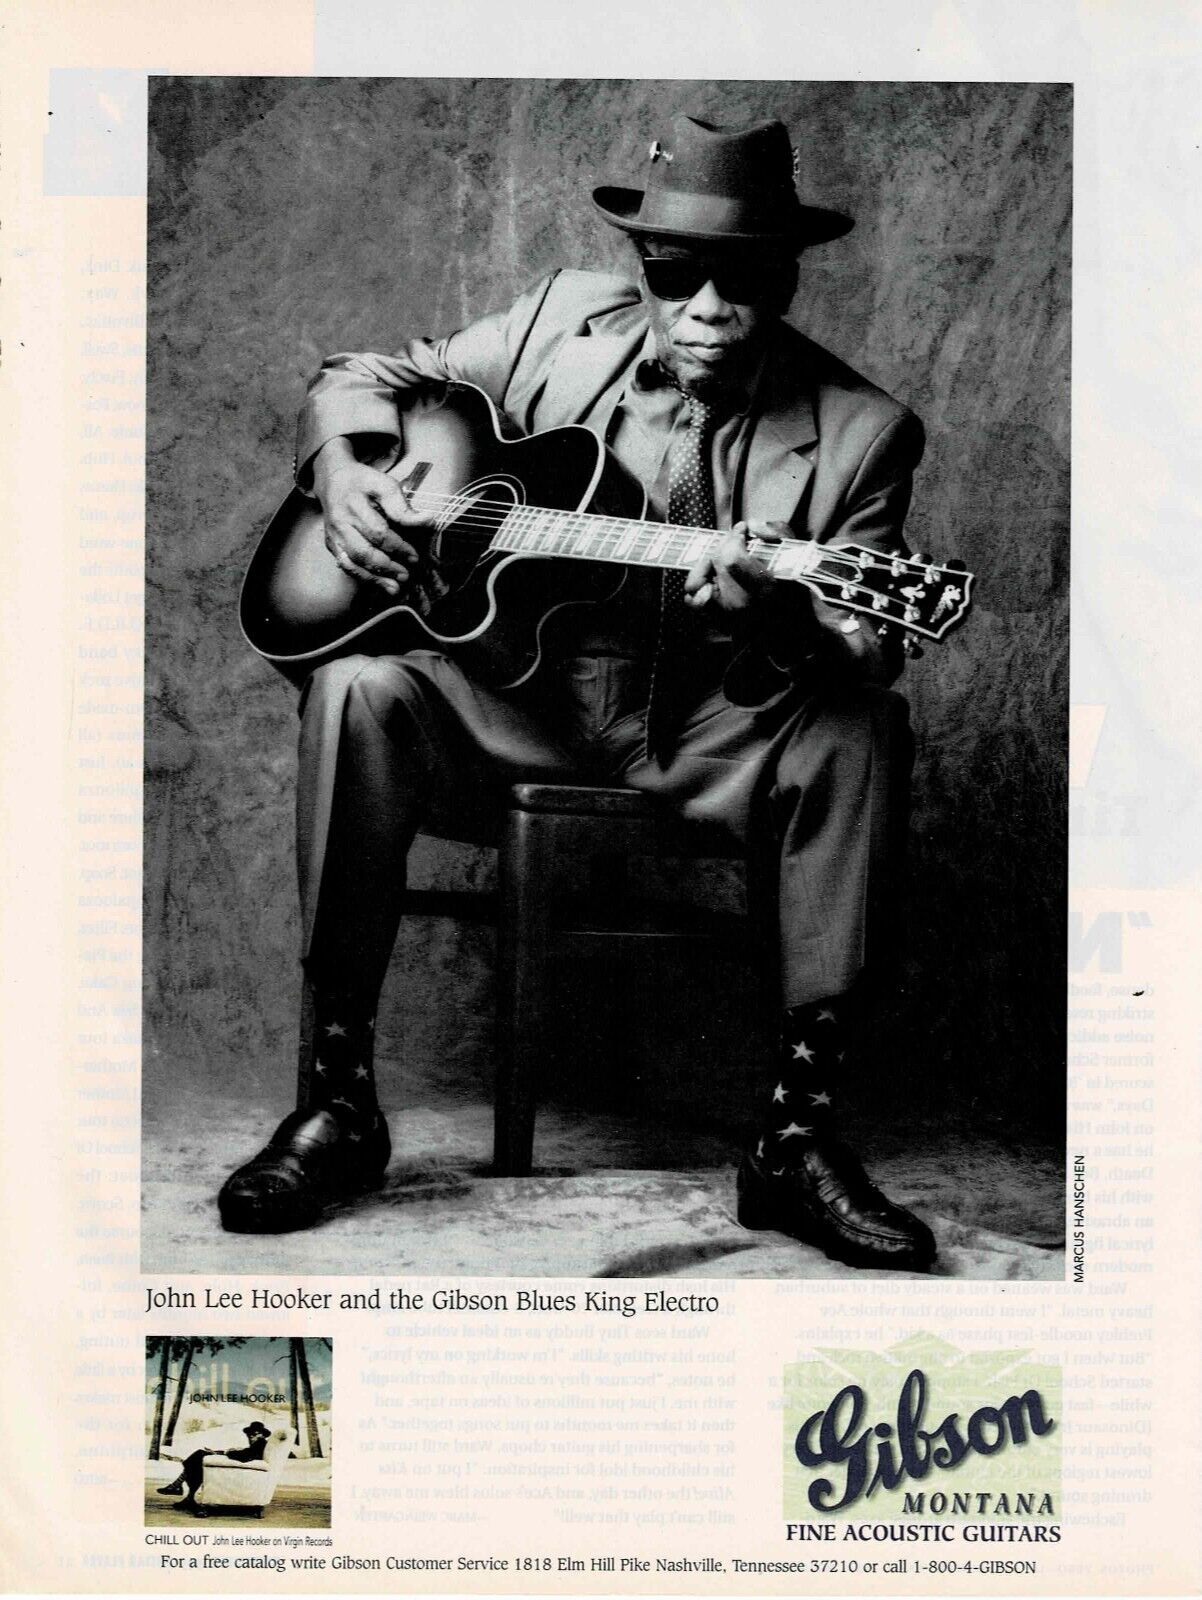 Gibson Guitars - Montana - Blues King Electro - John Lee Hooker  - 1995 Print Ad